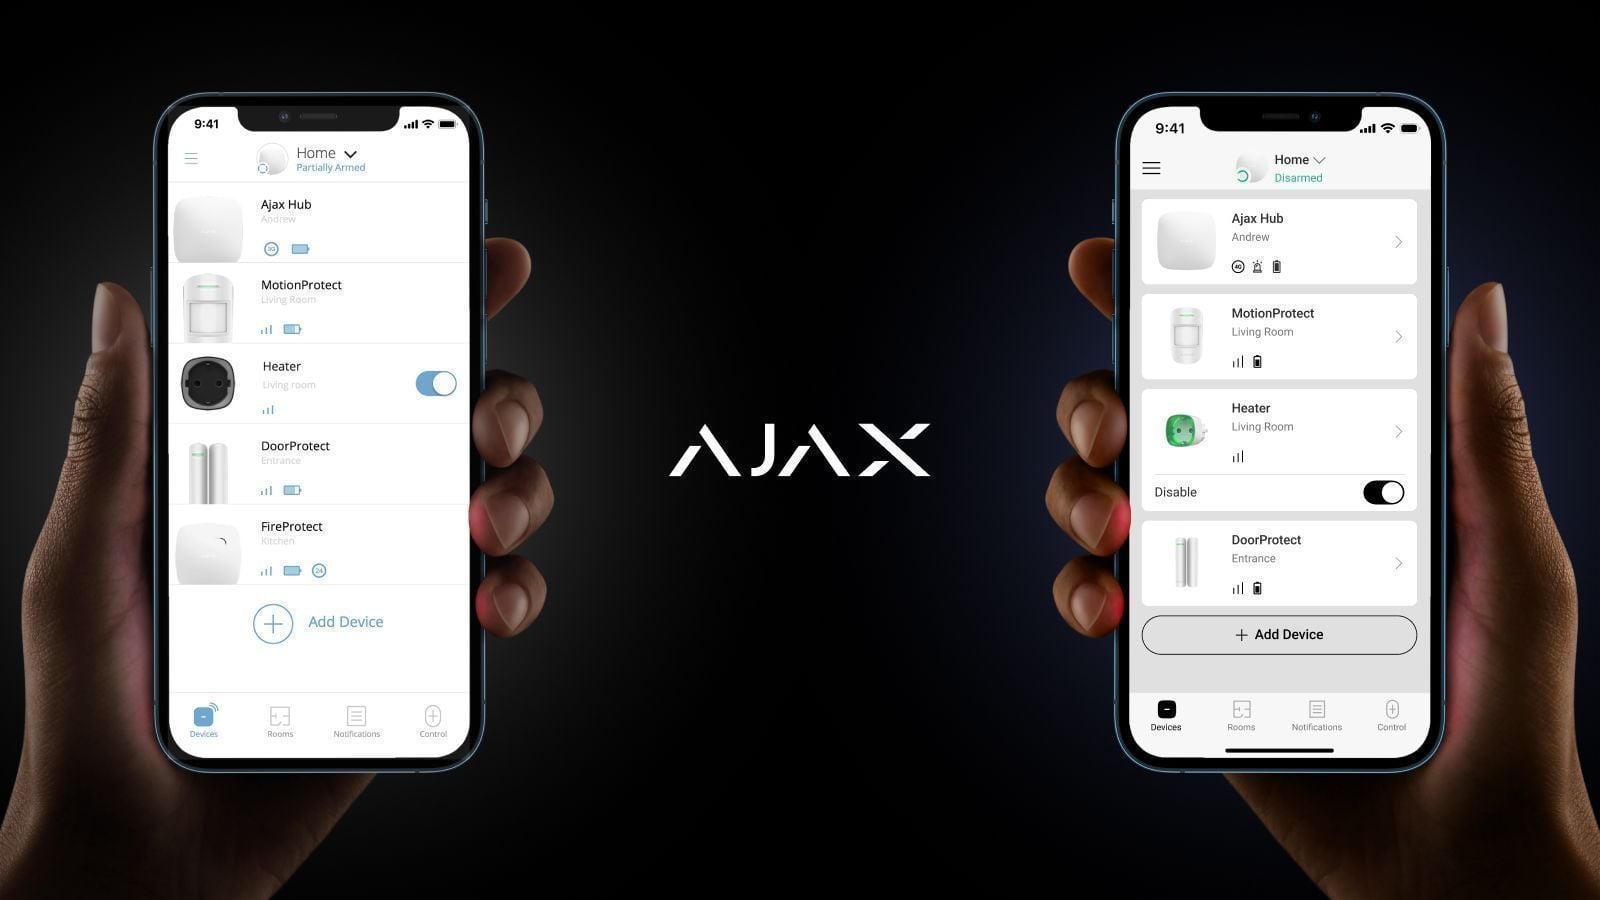 Обновленный дизайн приложений Ajax — все для комфортной работы